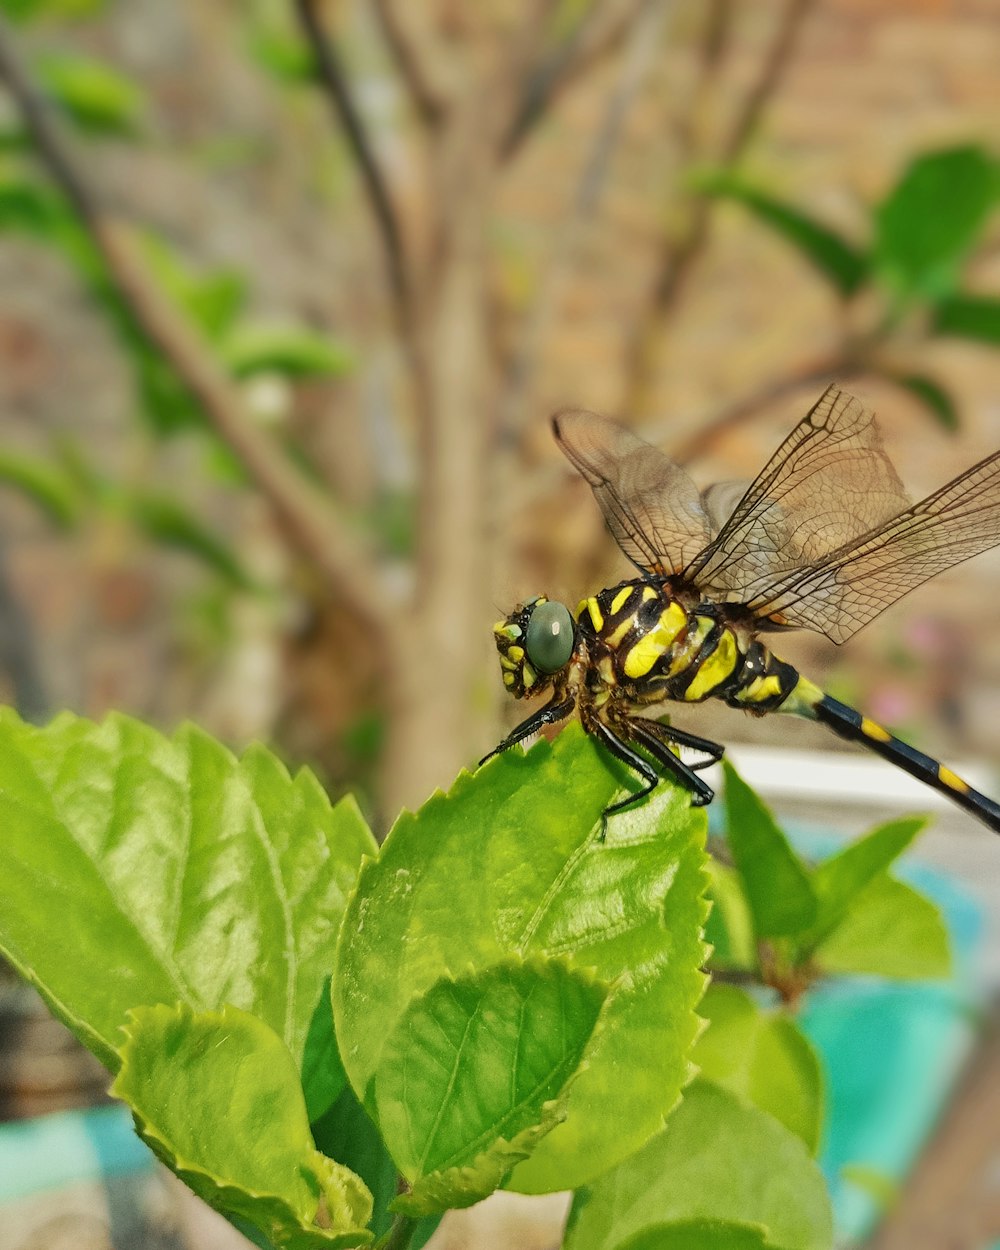 Una mosca de dragón amarilla y negra sentada en una hoja verde